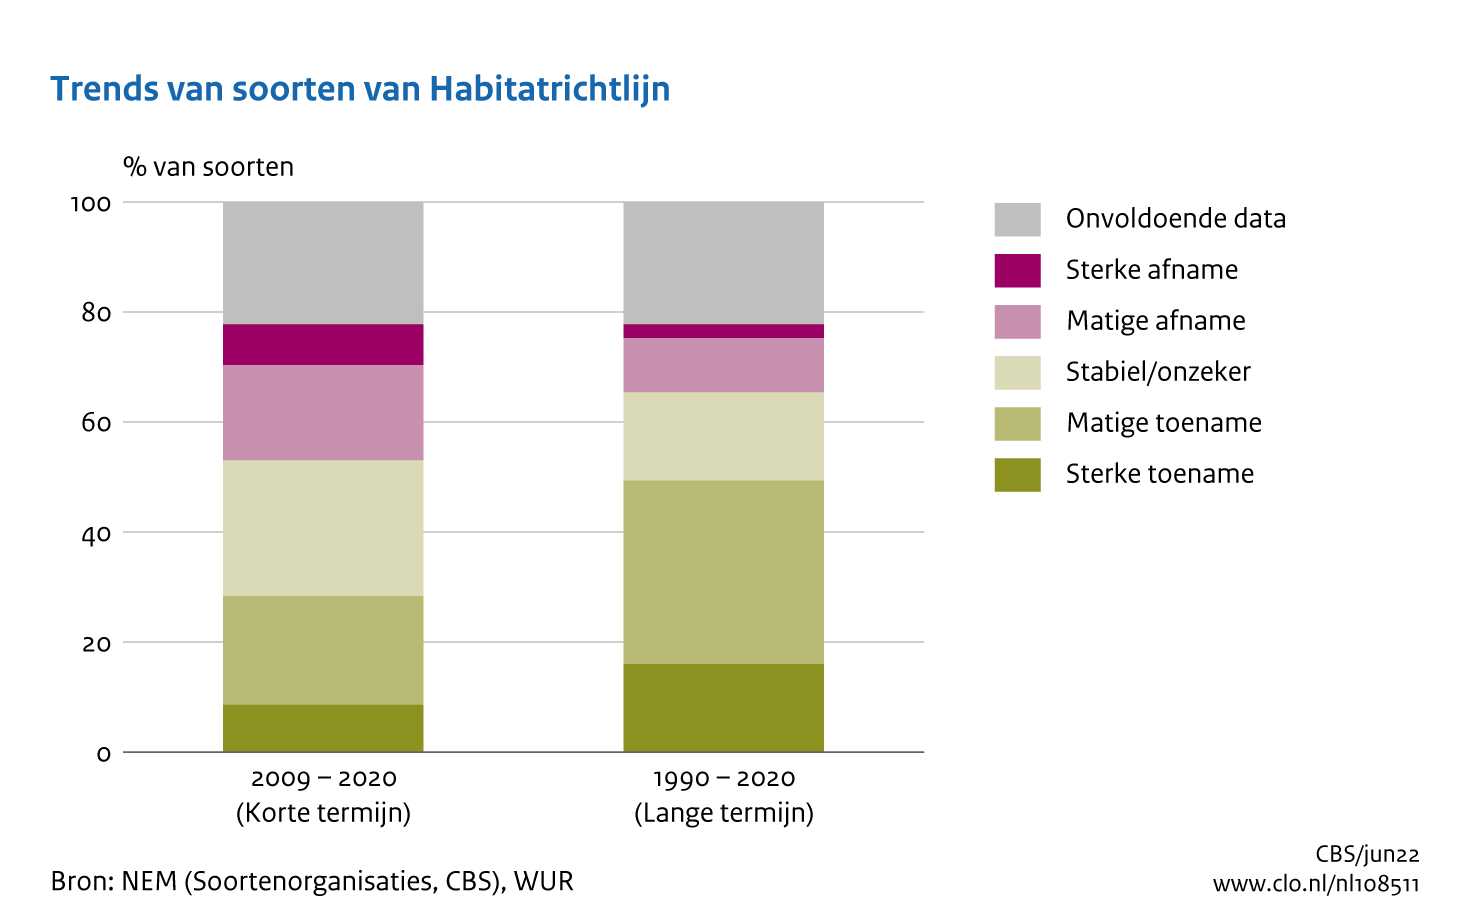 Deze afbeelding laat de trend van soorten van de Habitatrichtlijn zien. Tussen 2009 en 2020 is was er bij meer soorten sprake van een afnemende trend ten opzichte van 1990 tot 2020.